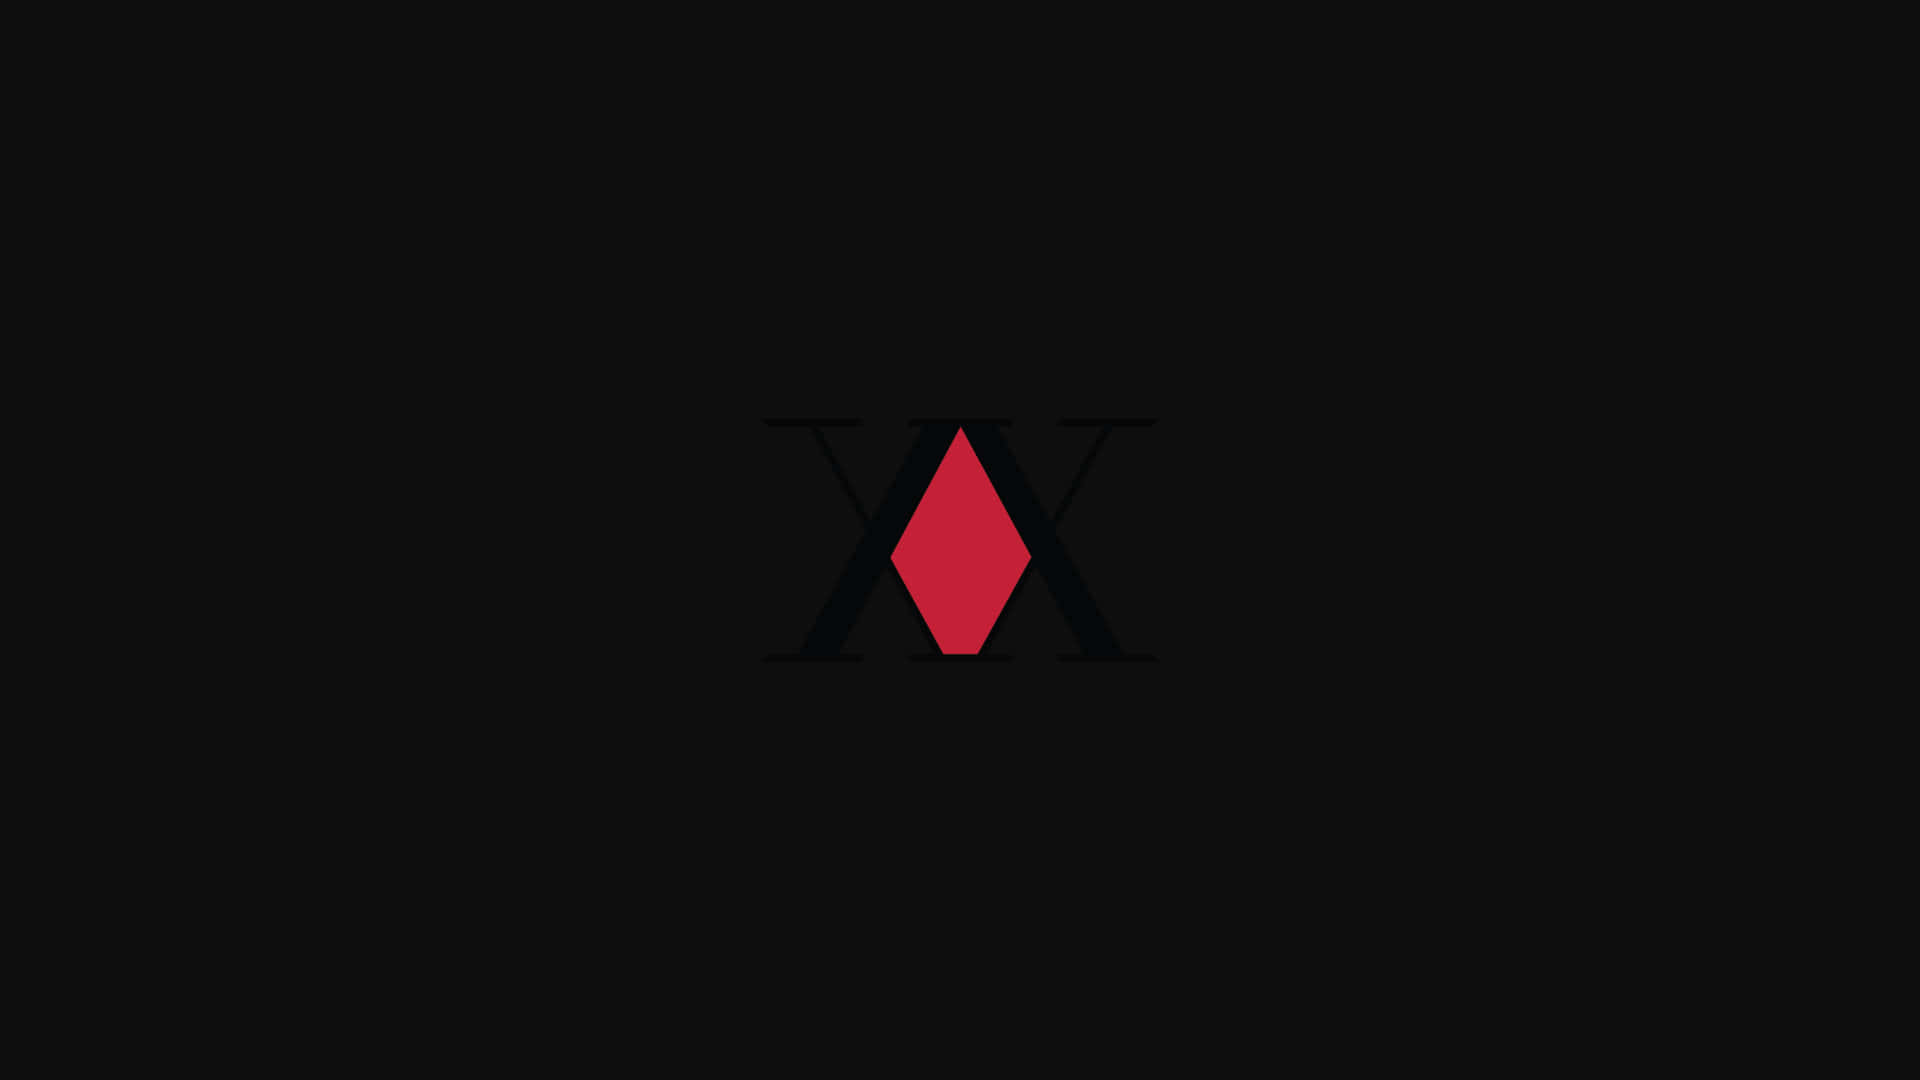 Hunter X Hunter Logo Red Pyramid Wallpaper